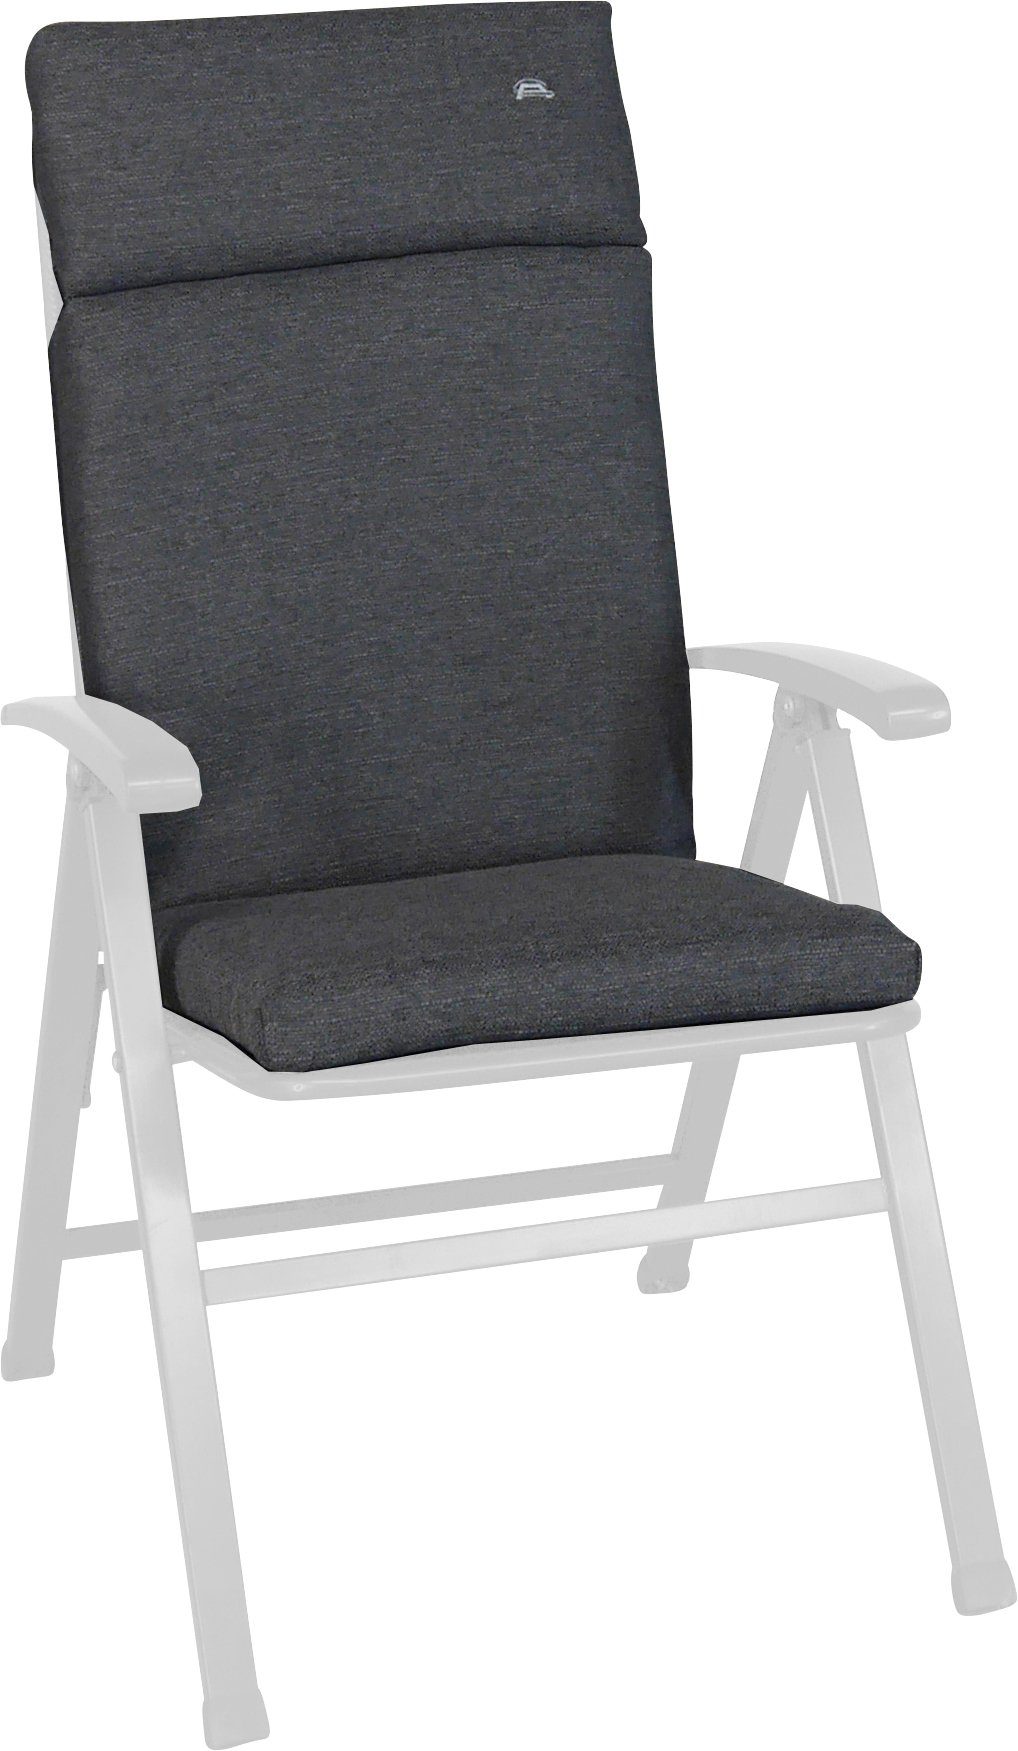 Angerer Freizeitmöbel Sesselauflage grau Smart, cm (B/T): ca. 47x112